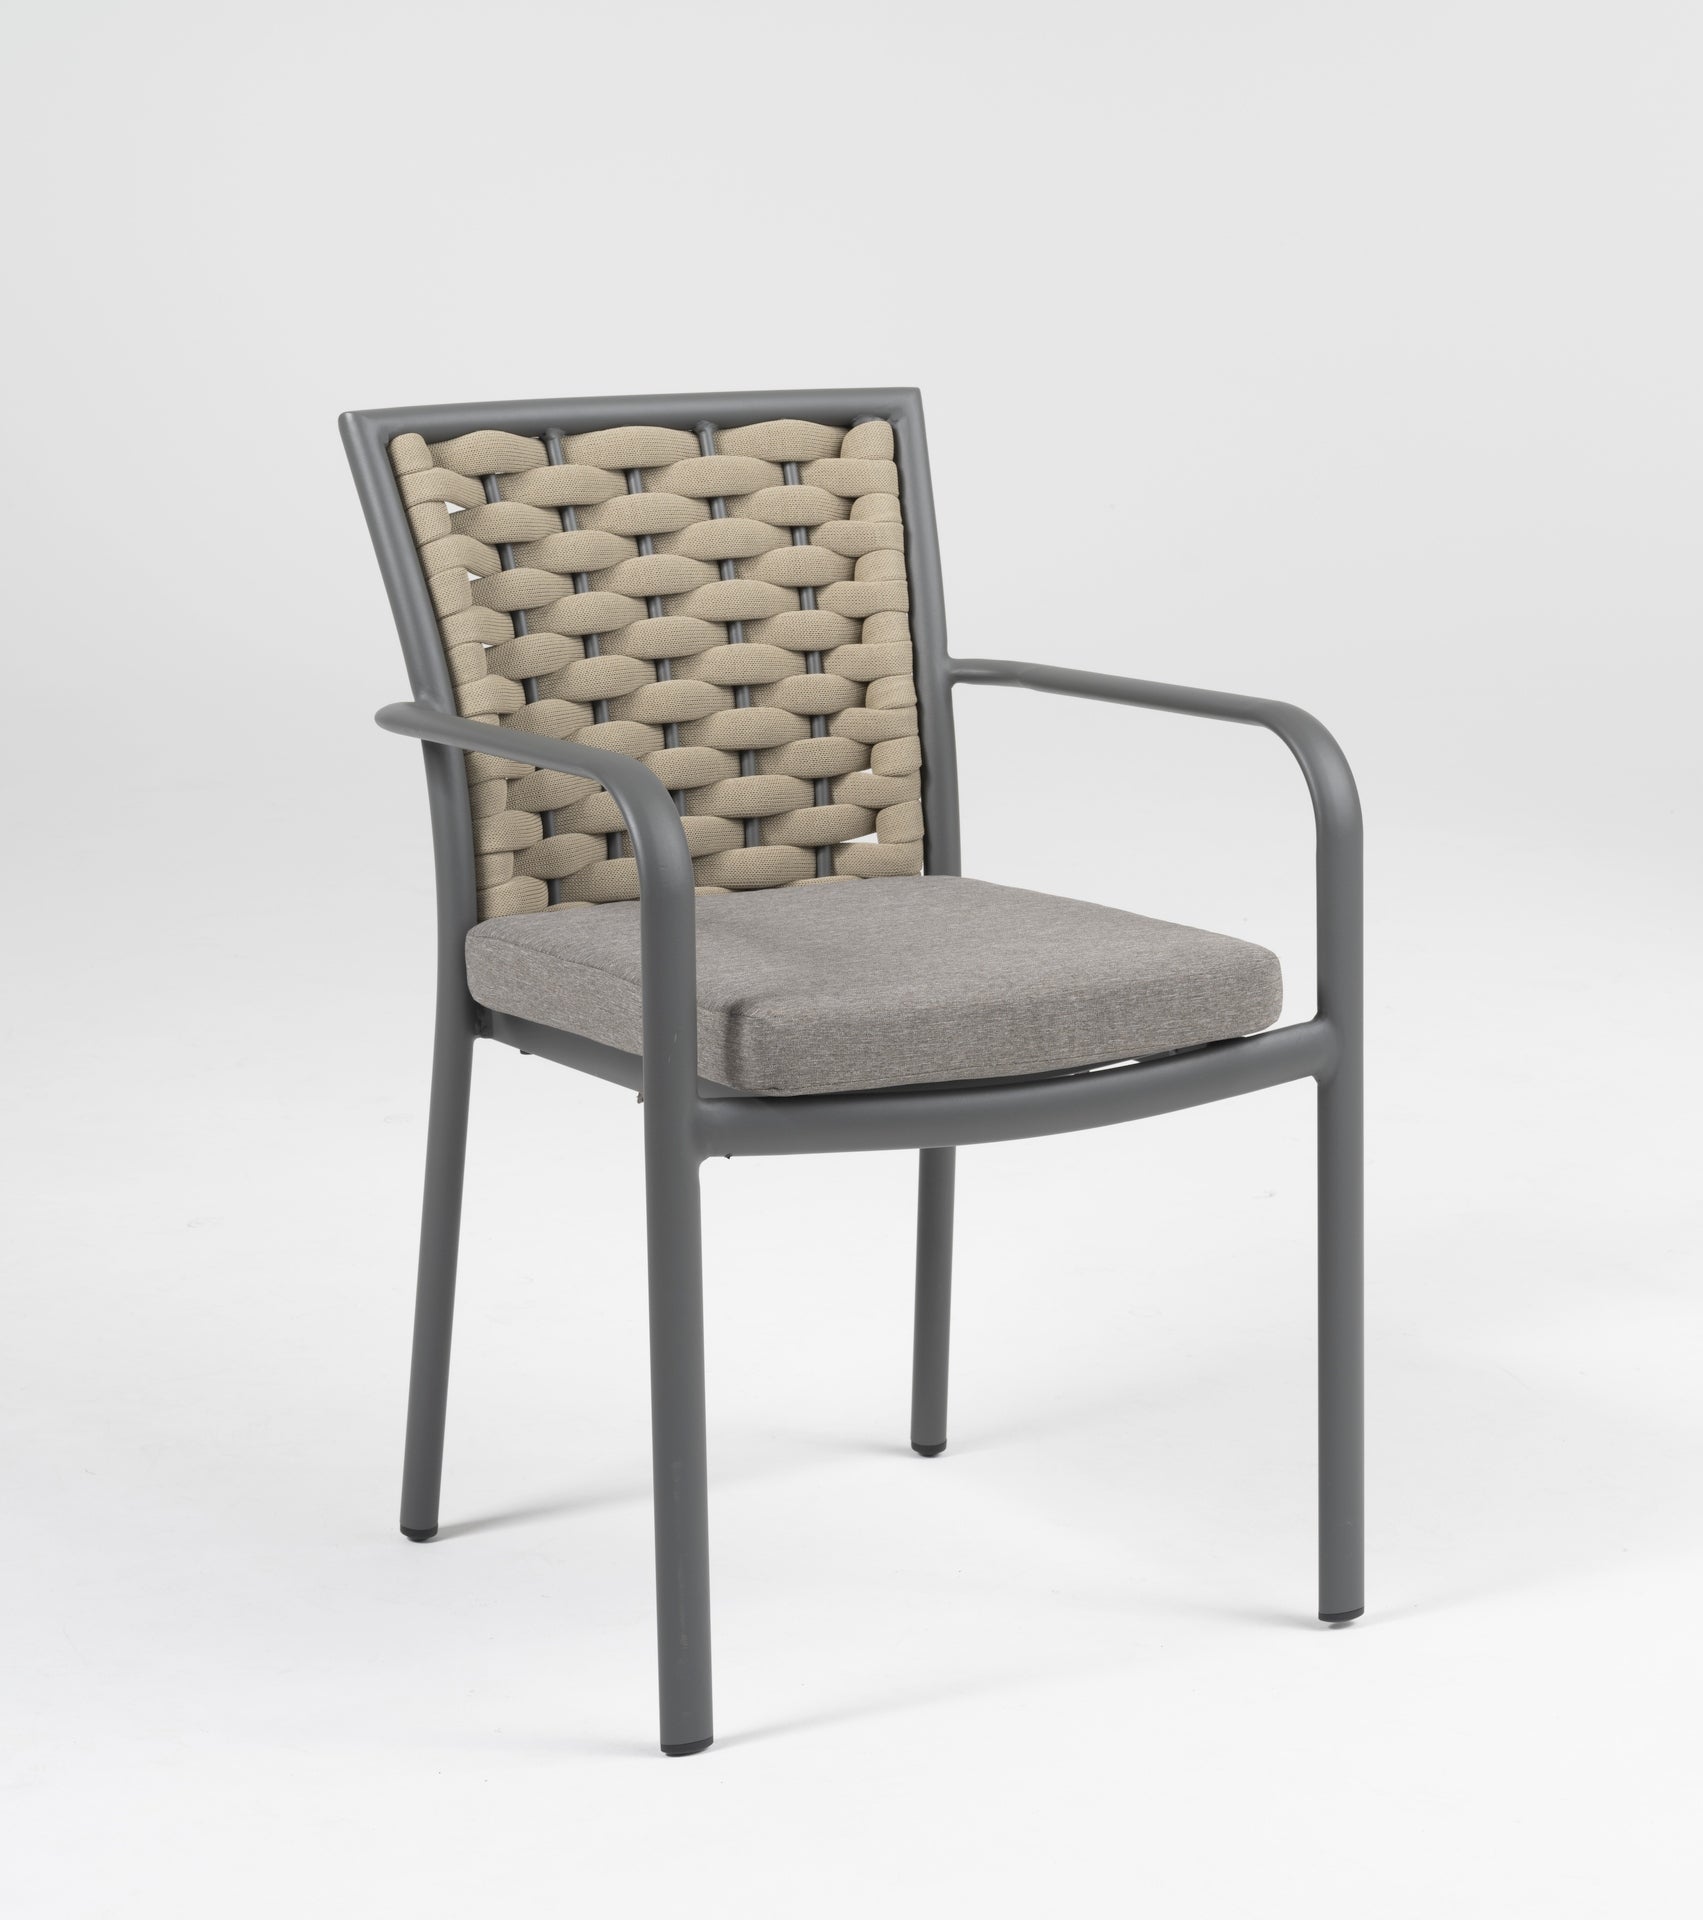 Eleganter 'Clara' Armstuhl mit grauem Metallgestell und taupefarbenen, feuchtigkeitsresistenten Textilschnüren, inklusive passendem Sitzkissen, erhältlich bei Gartenmoebelshop.at - mit grauem Hintergrund